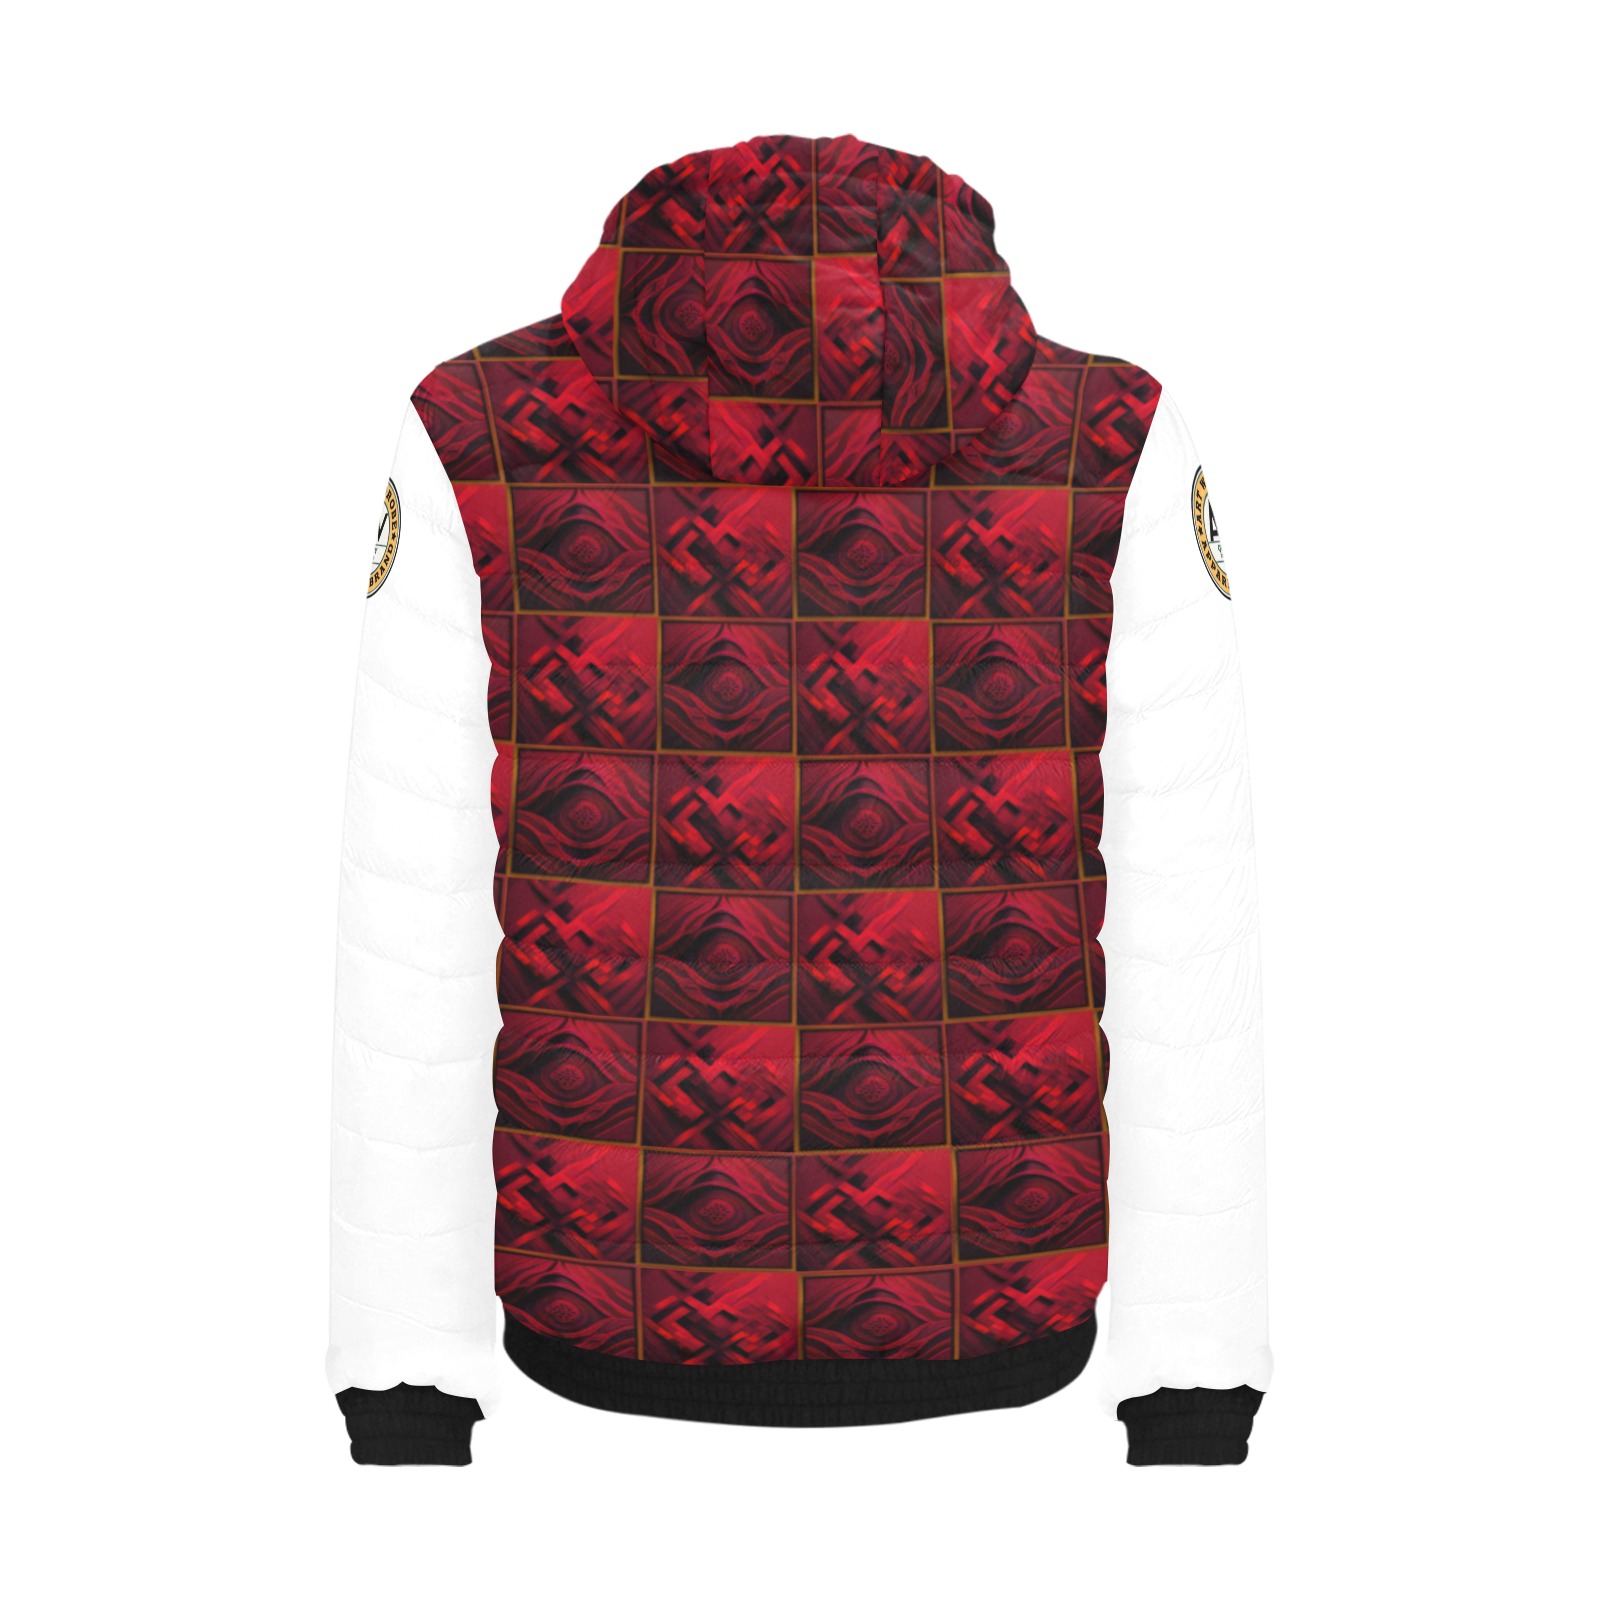 alternating pattern red diamond Men's Padded Hooded Jacket (Model H42)